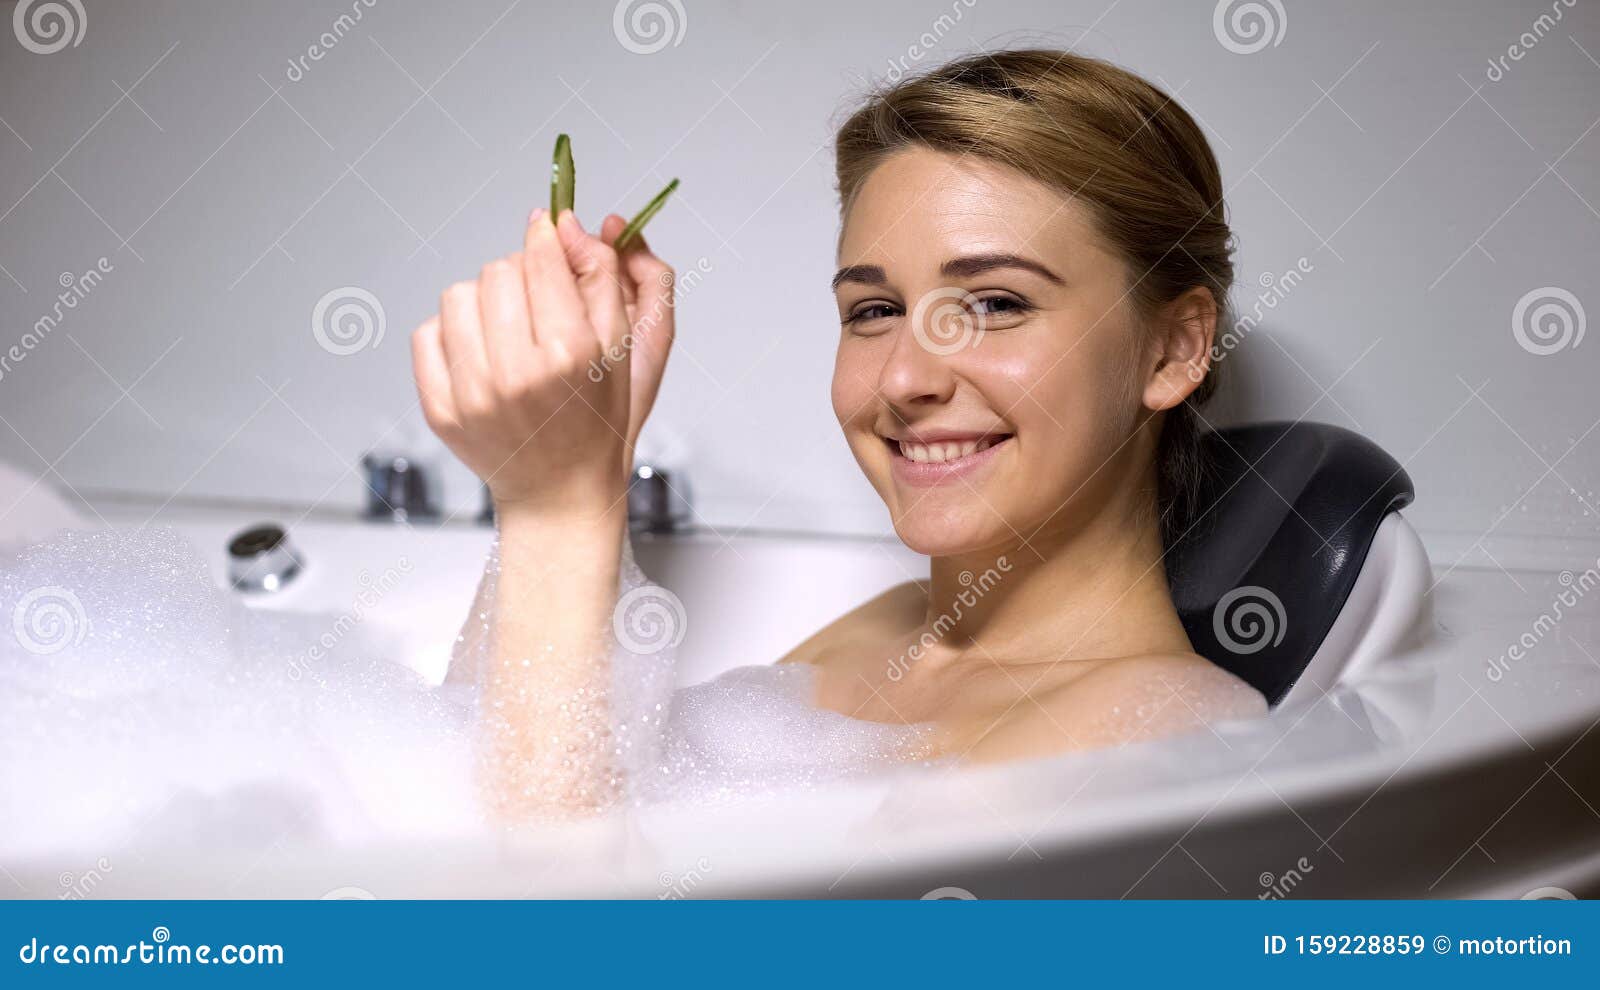 Сестра забыла закрыться в ванной. Девушка в ванне с огурцами на глазах.